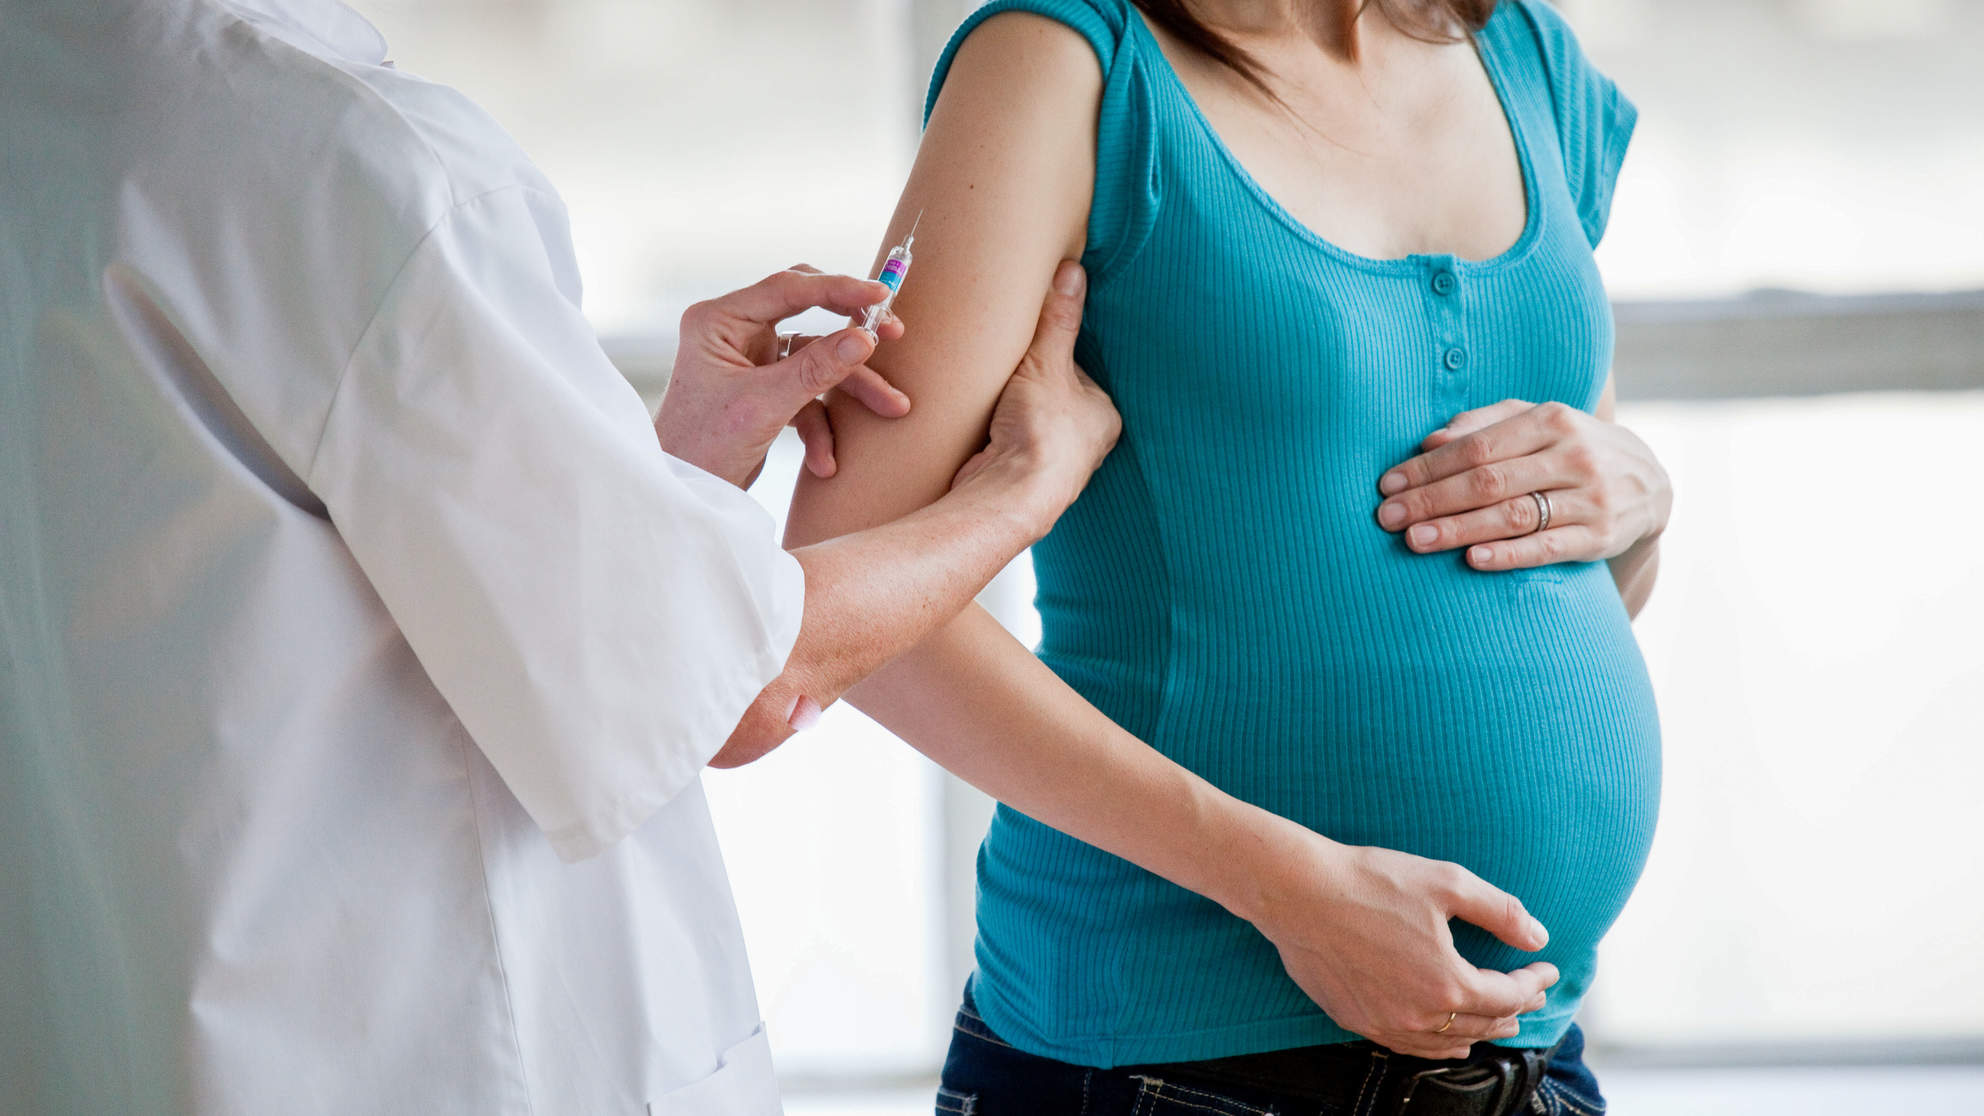 Безопасно ли делать прививки во время беременности?